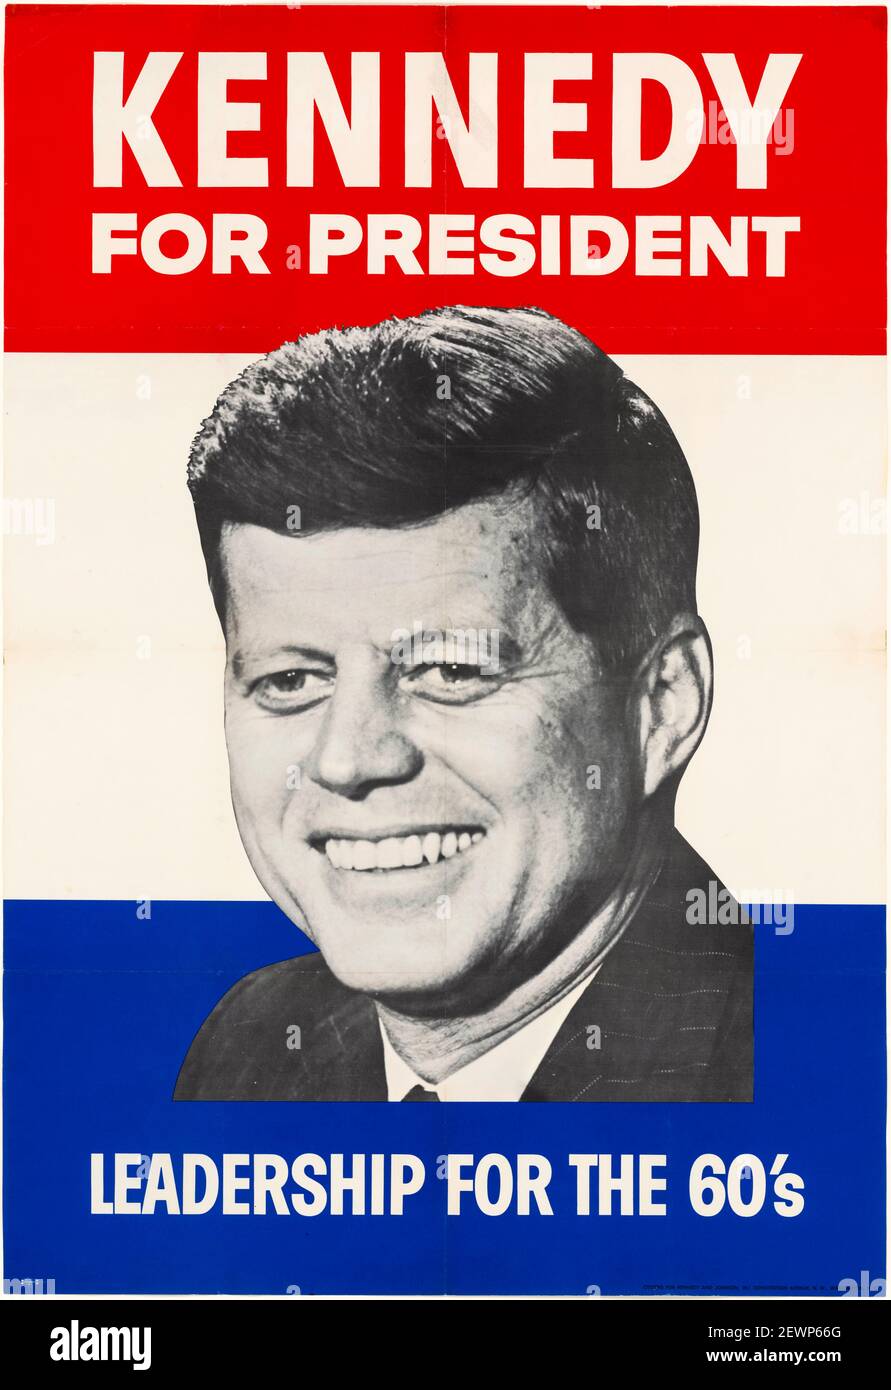 John F Kennedy (JFK), campagne présidentielle avec portrait, Kennedy pour président, affiche vers 1960 Banque D'Images